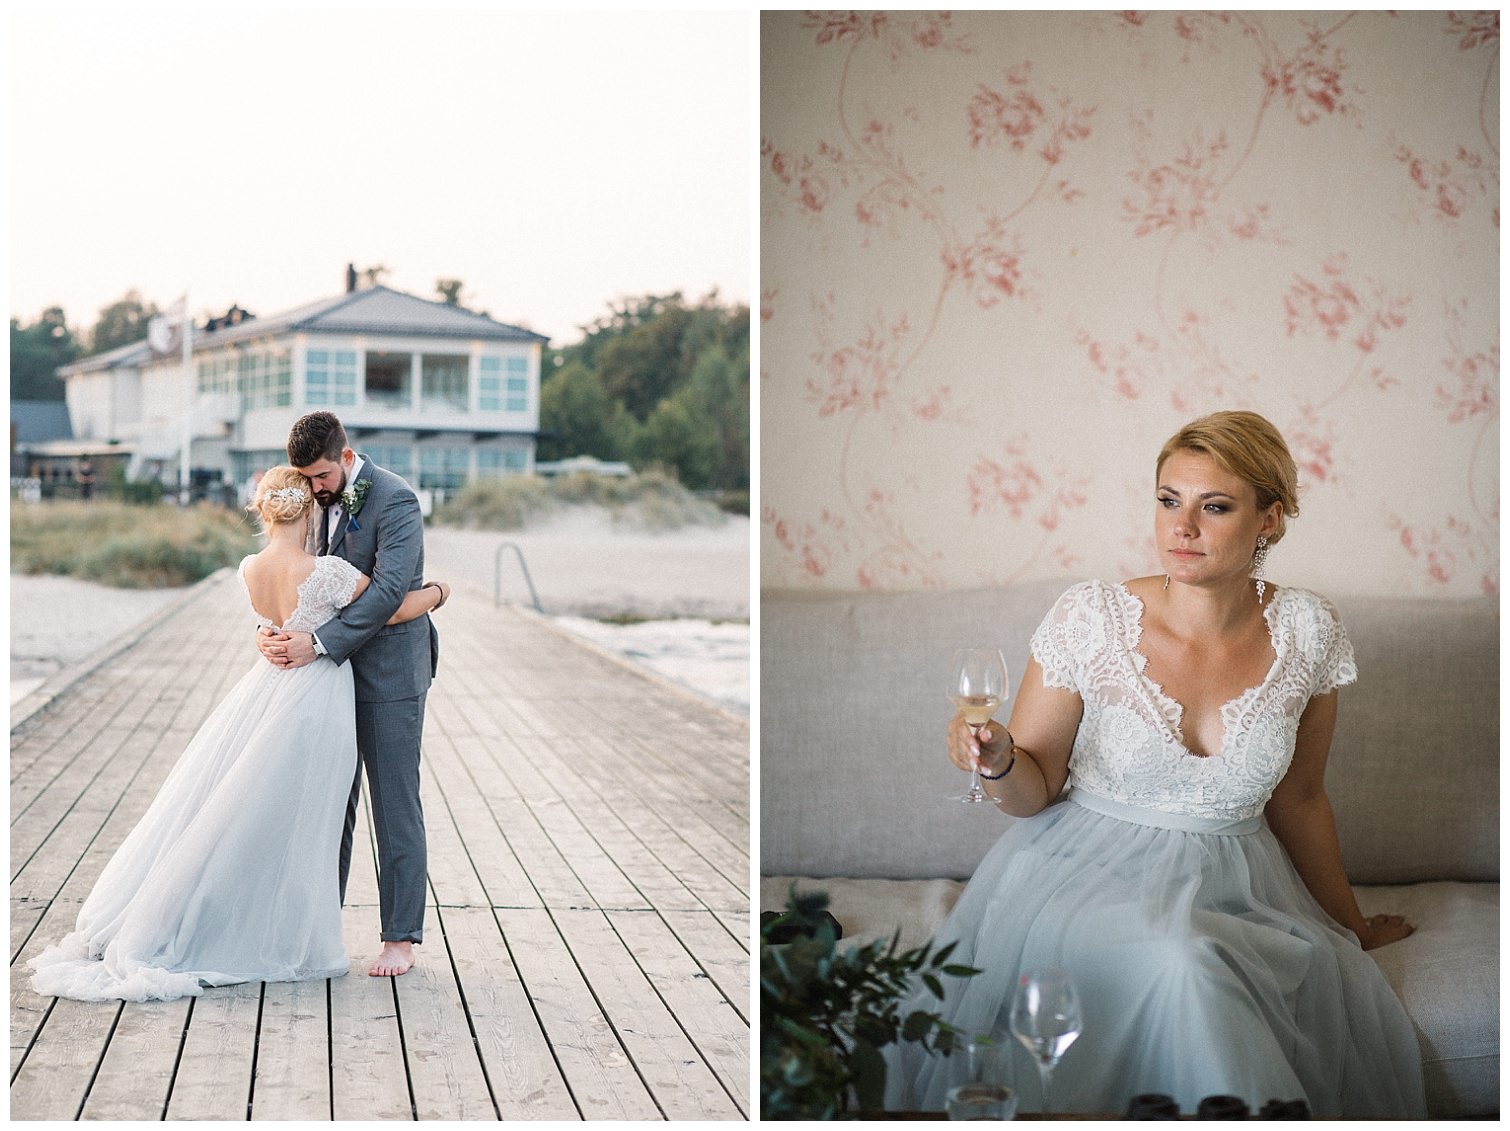 Bröllopsfotograf Tove Lundquist i Skåne tipsar om svenska designers när det gäller brudklänningar. 